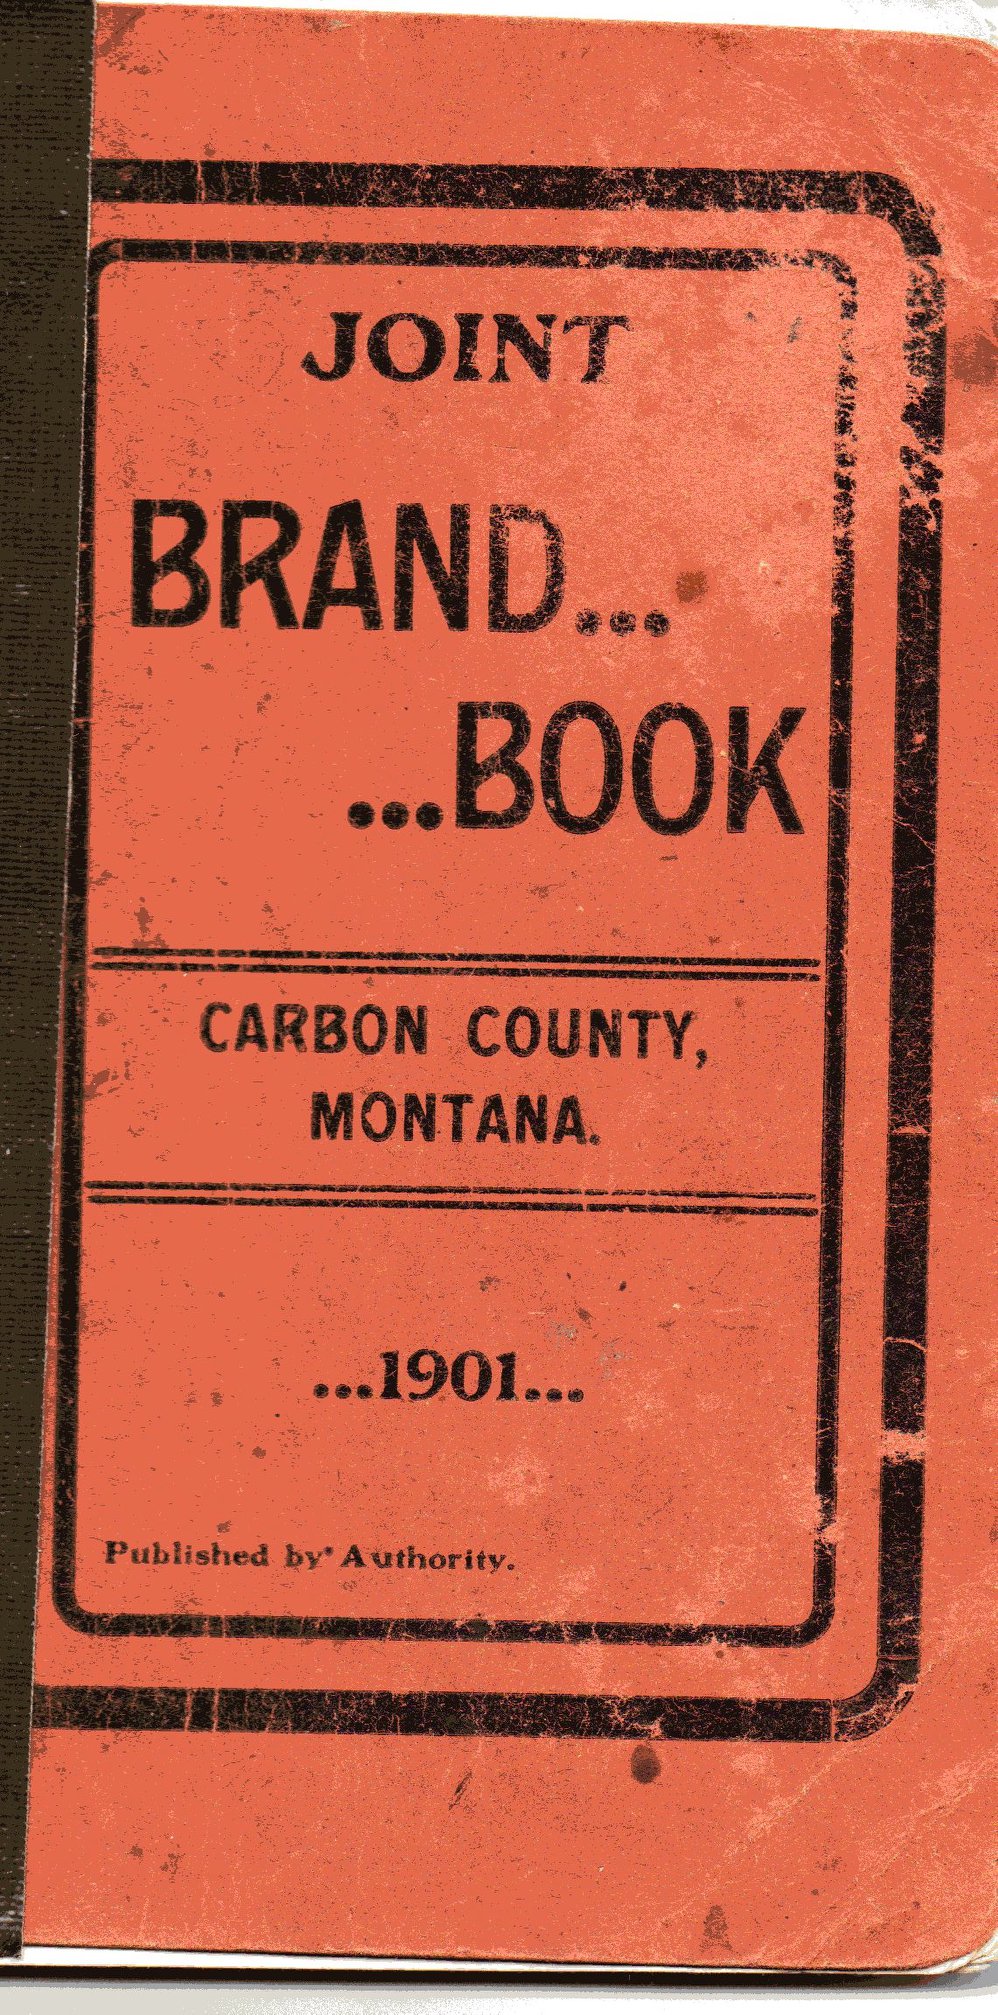 Carbon County Montana Family History